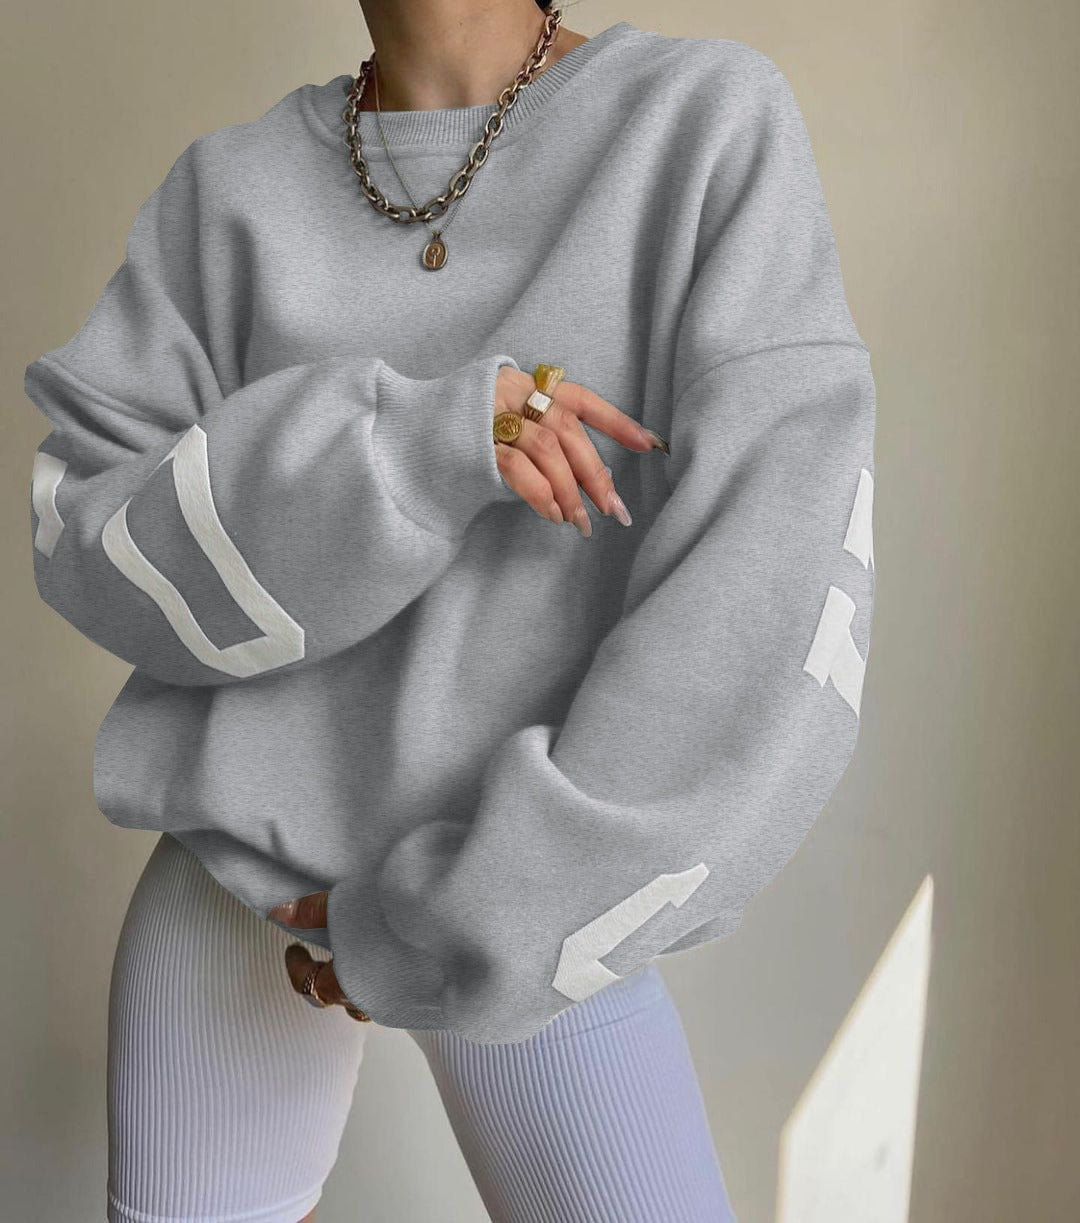 Casual Letters Print Sweatshirt Women Fashion Fleece Long Sleeve Loose Hoodies Y2k Streetwear  Autumn Winter Lady Pullovers